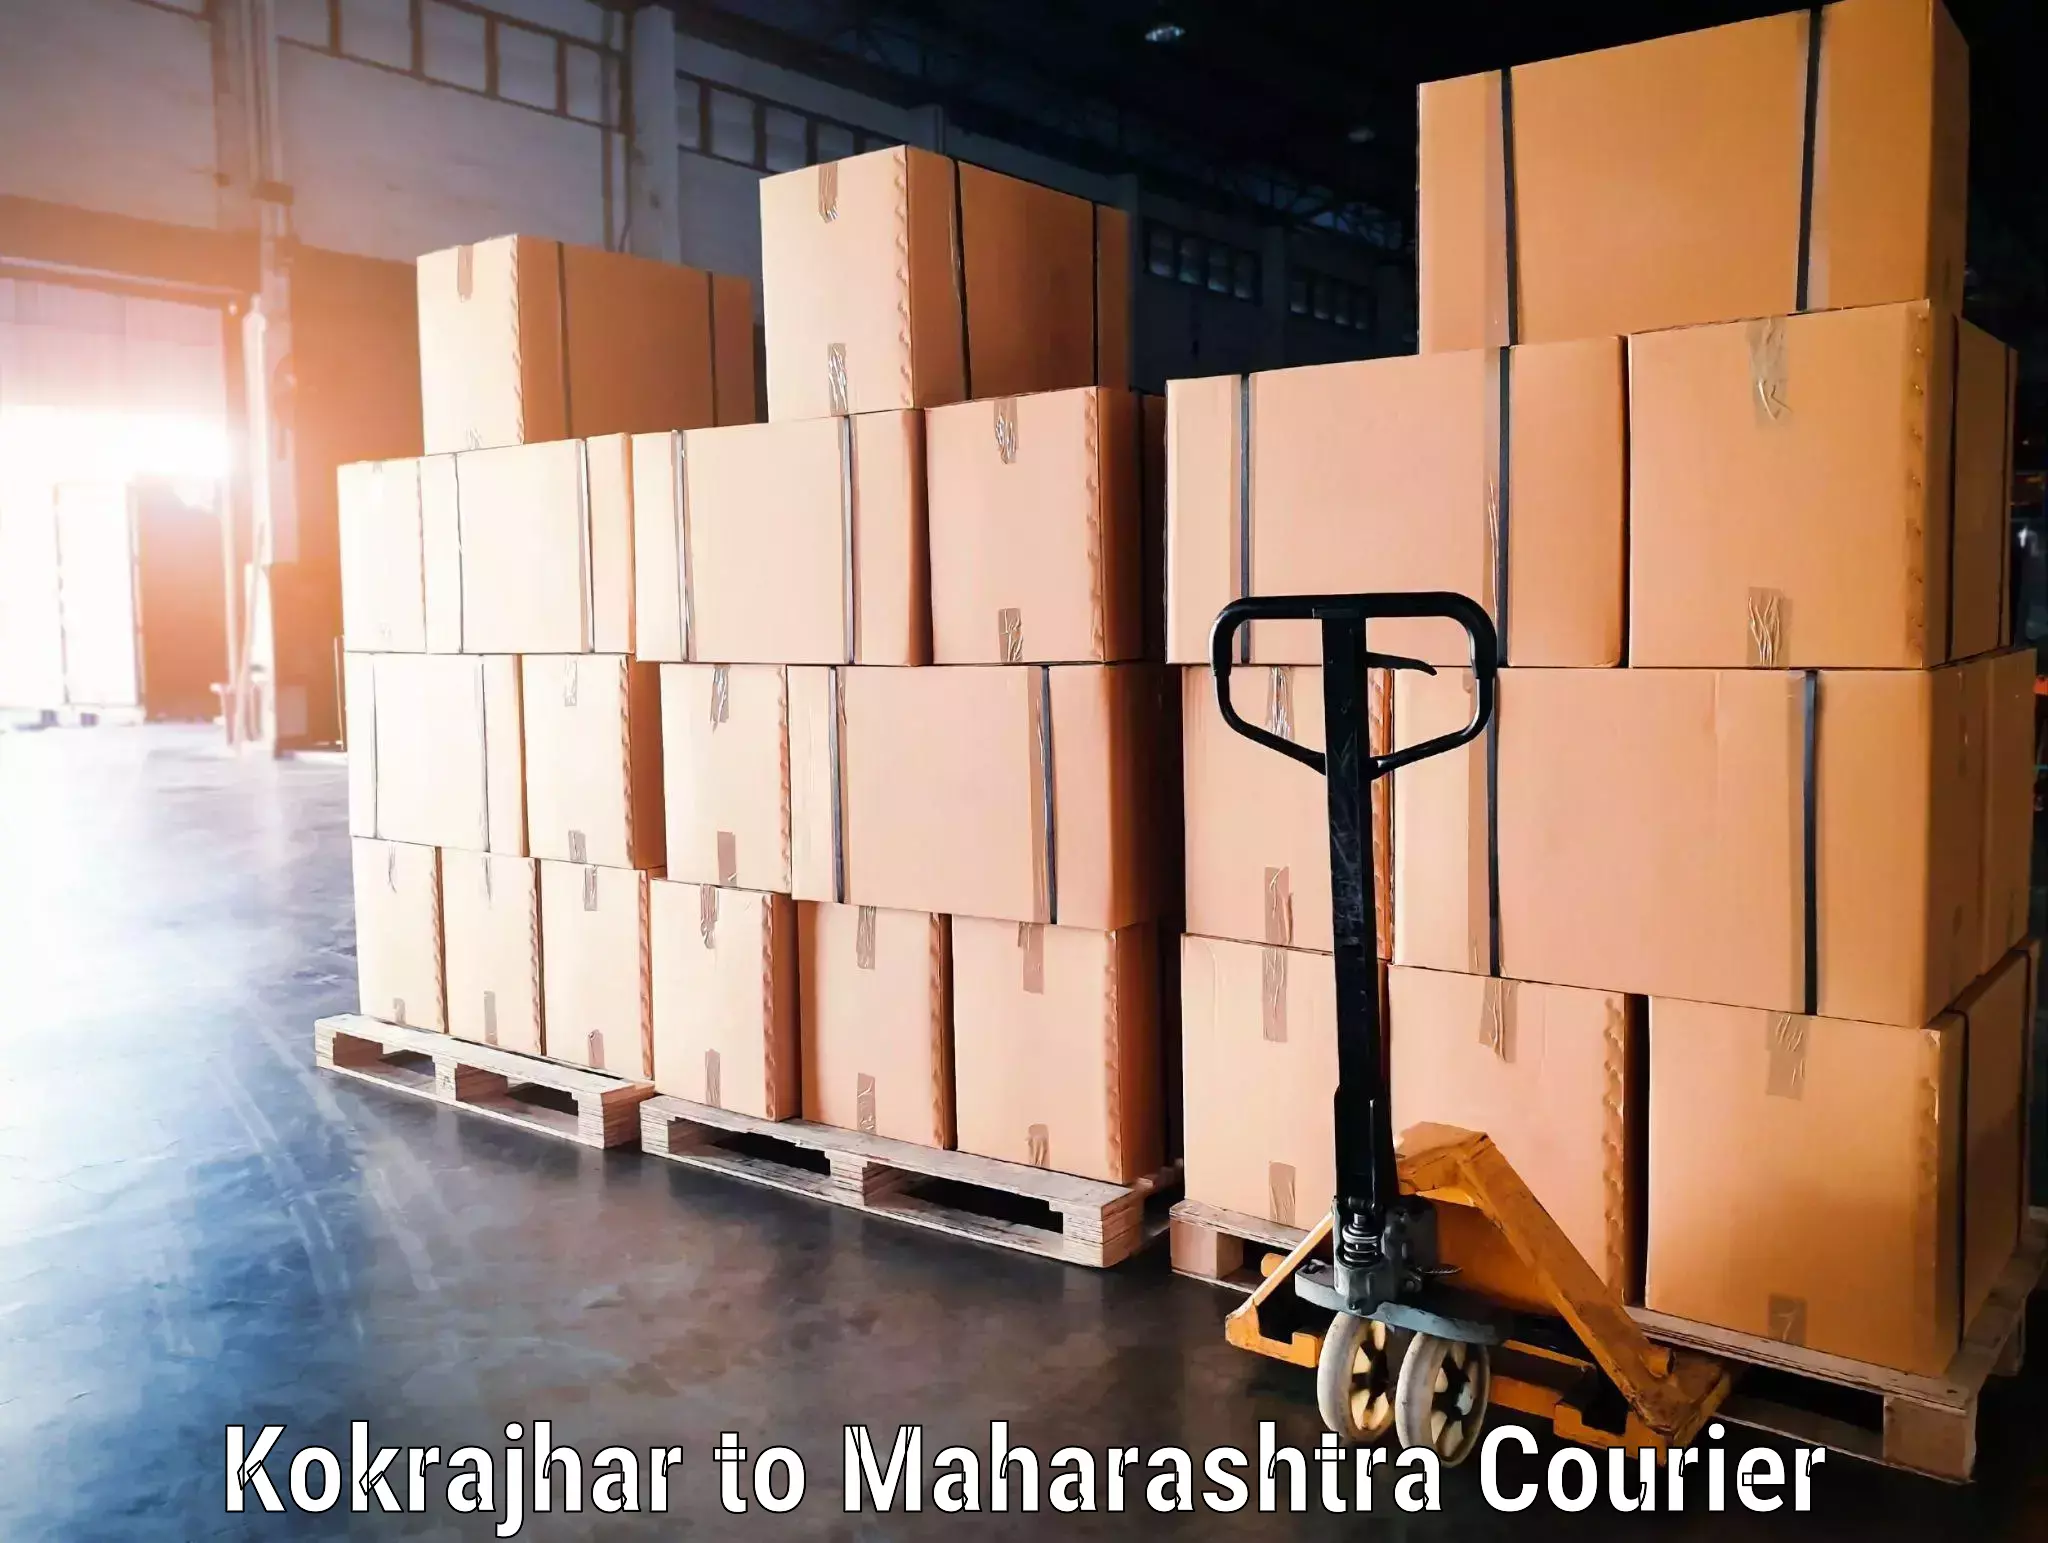 Luggage shipment specialists Kokrajhar to Chinchbunder